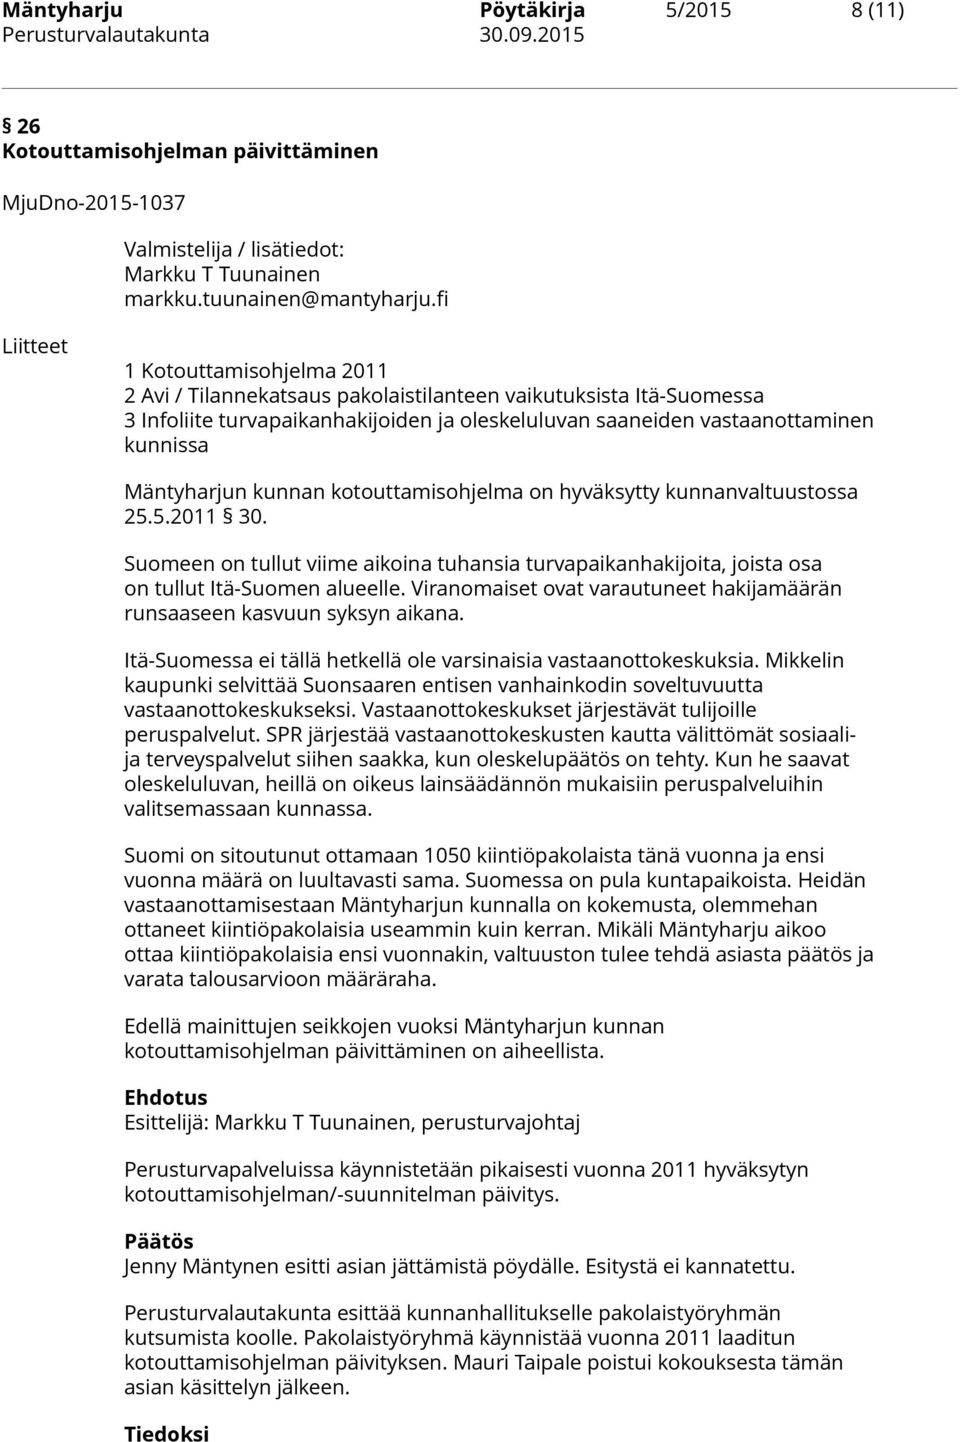 Mäntyharjun kunnan kotouttamisohjelma on hyväksytty kunnanvaltuustossa 25.5.2011 30. Suomeen on tullut viime aikoina tuhansia turvapaikanhakijoita, joista osa on tullut Itä-Suomen alueelle.